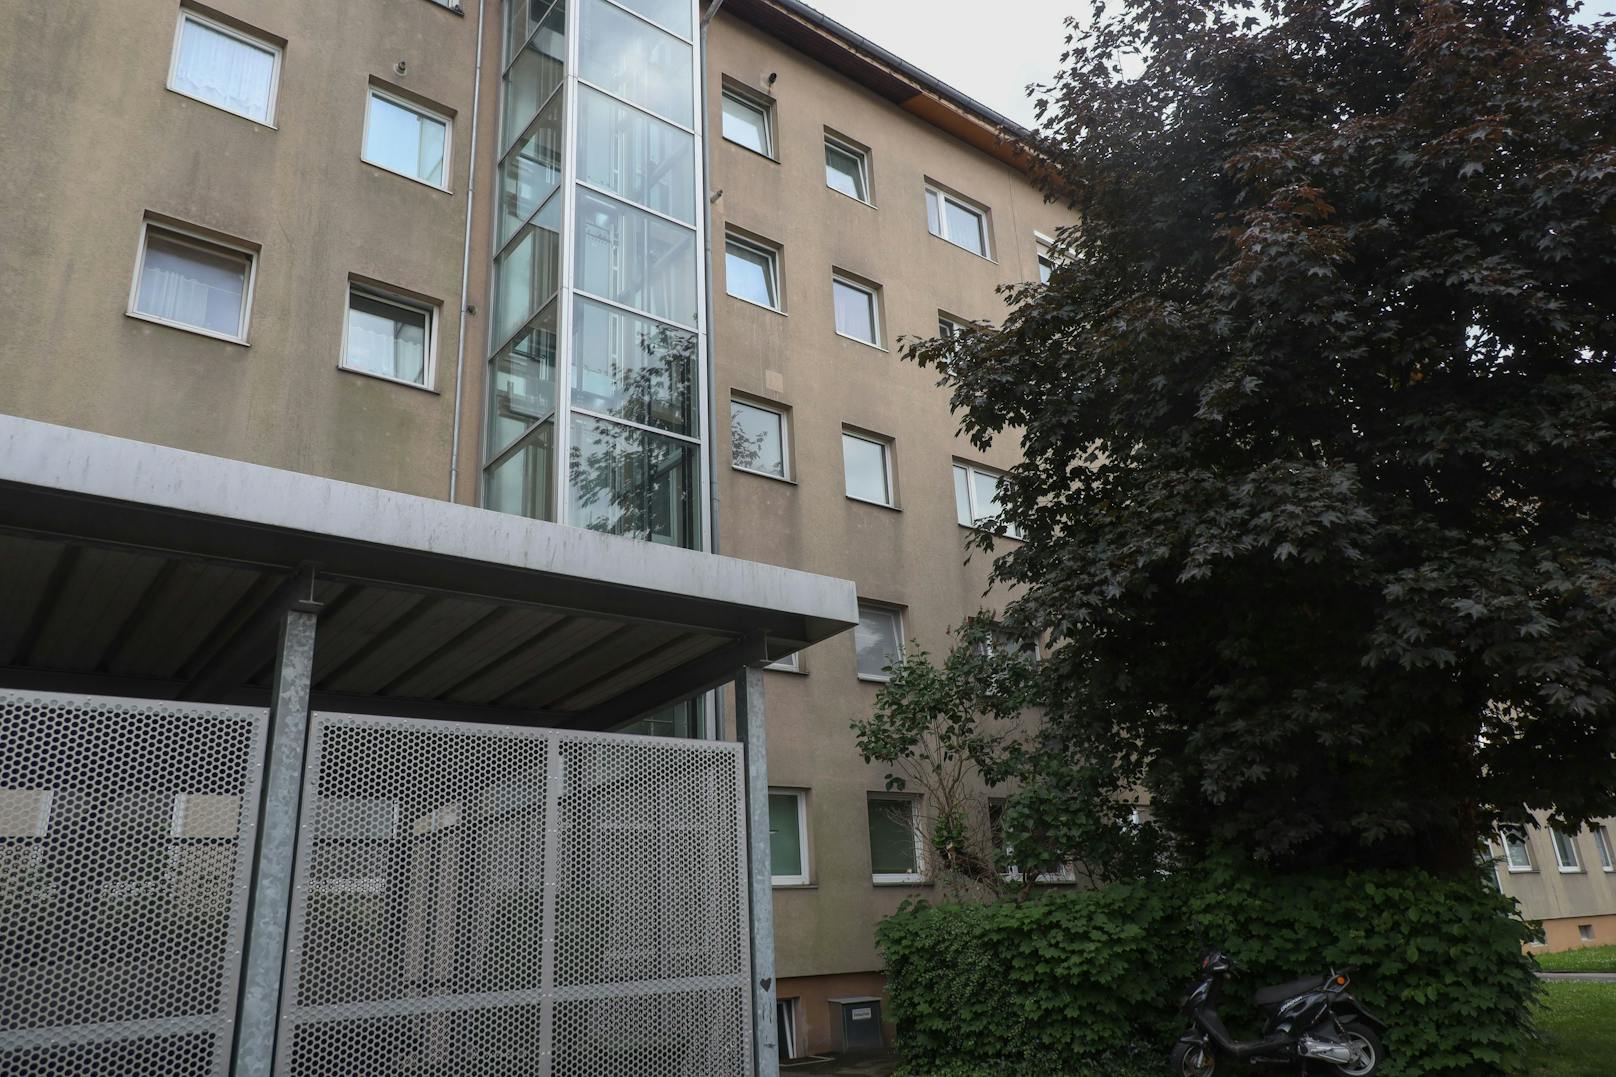 Die heute Dreijährige stürzte im Mai aus dem vierten Stock eines Mehrparteienhauses in Linz.